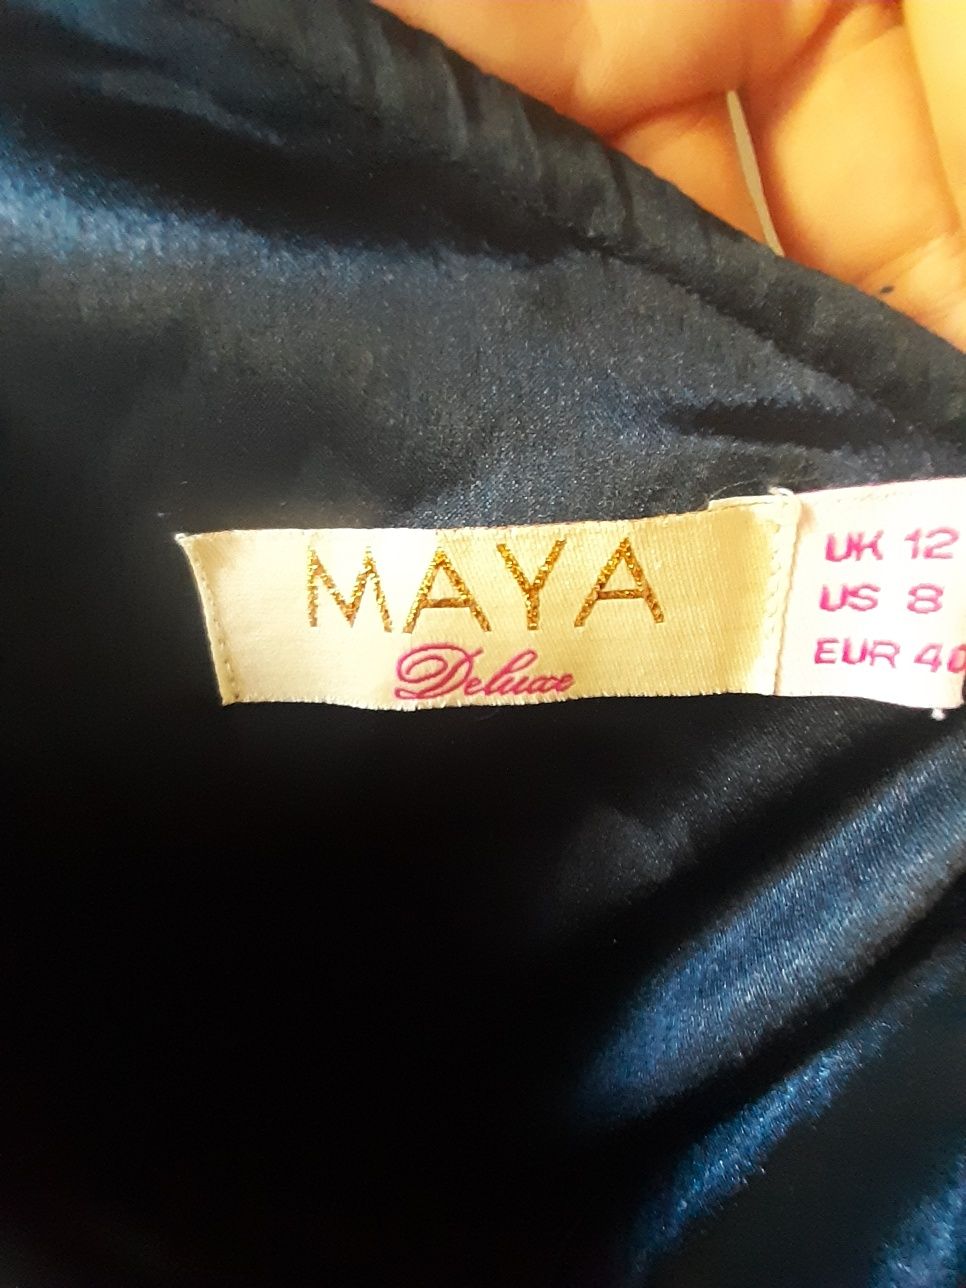 Maya deluxe suknia wieczorowa koktajlowa granat L 40